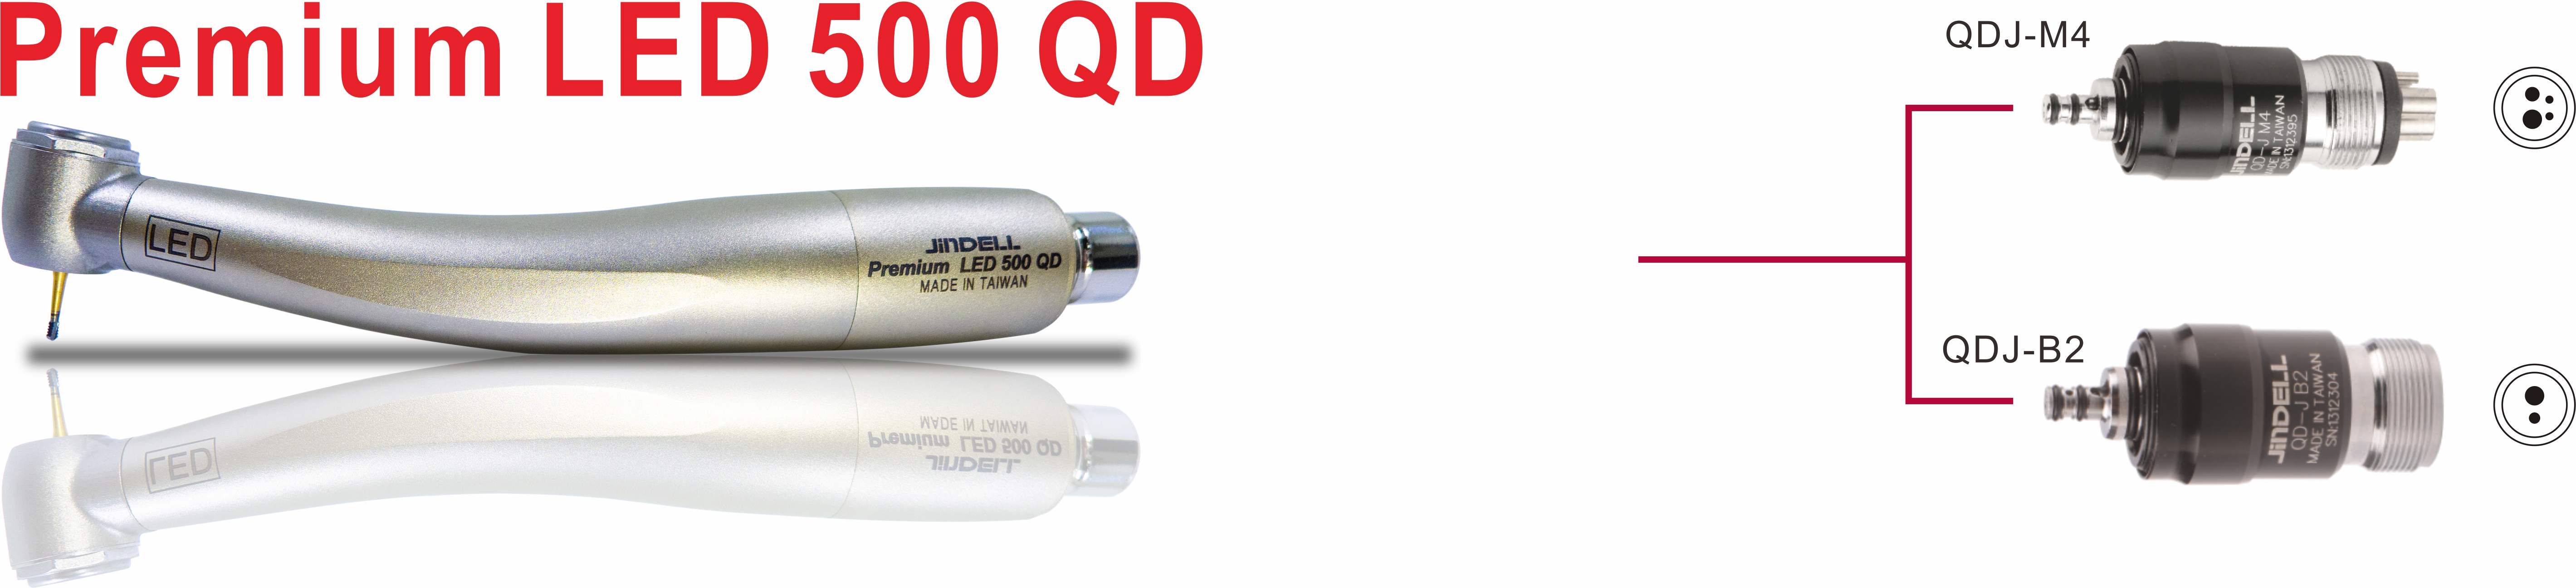 Premium LED 500 QD 